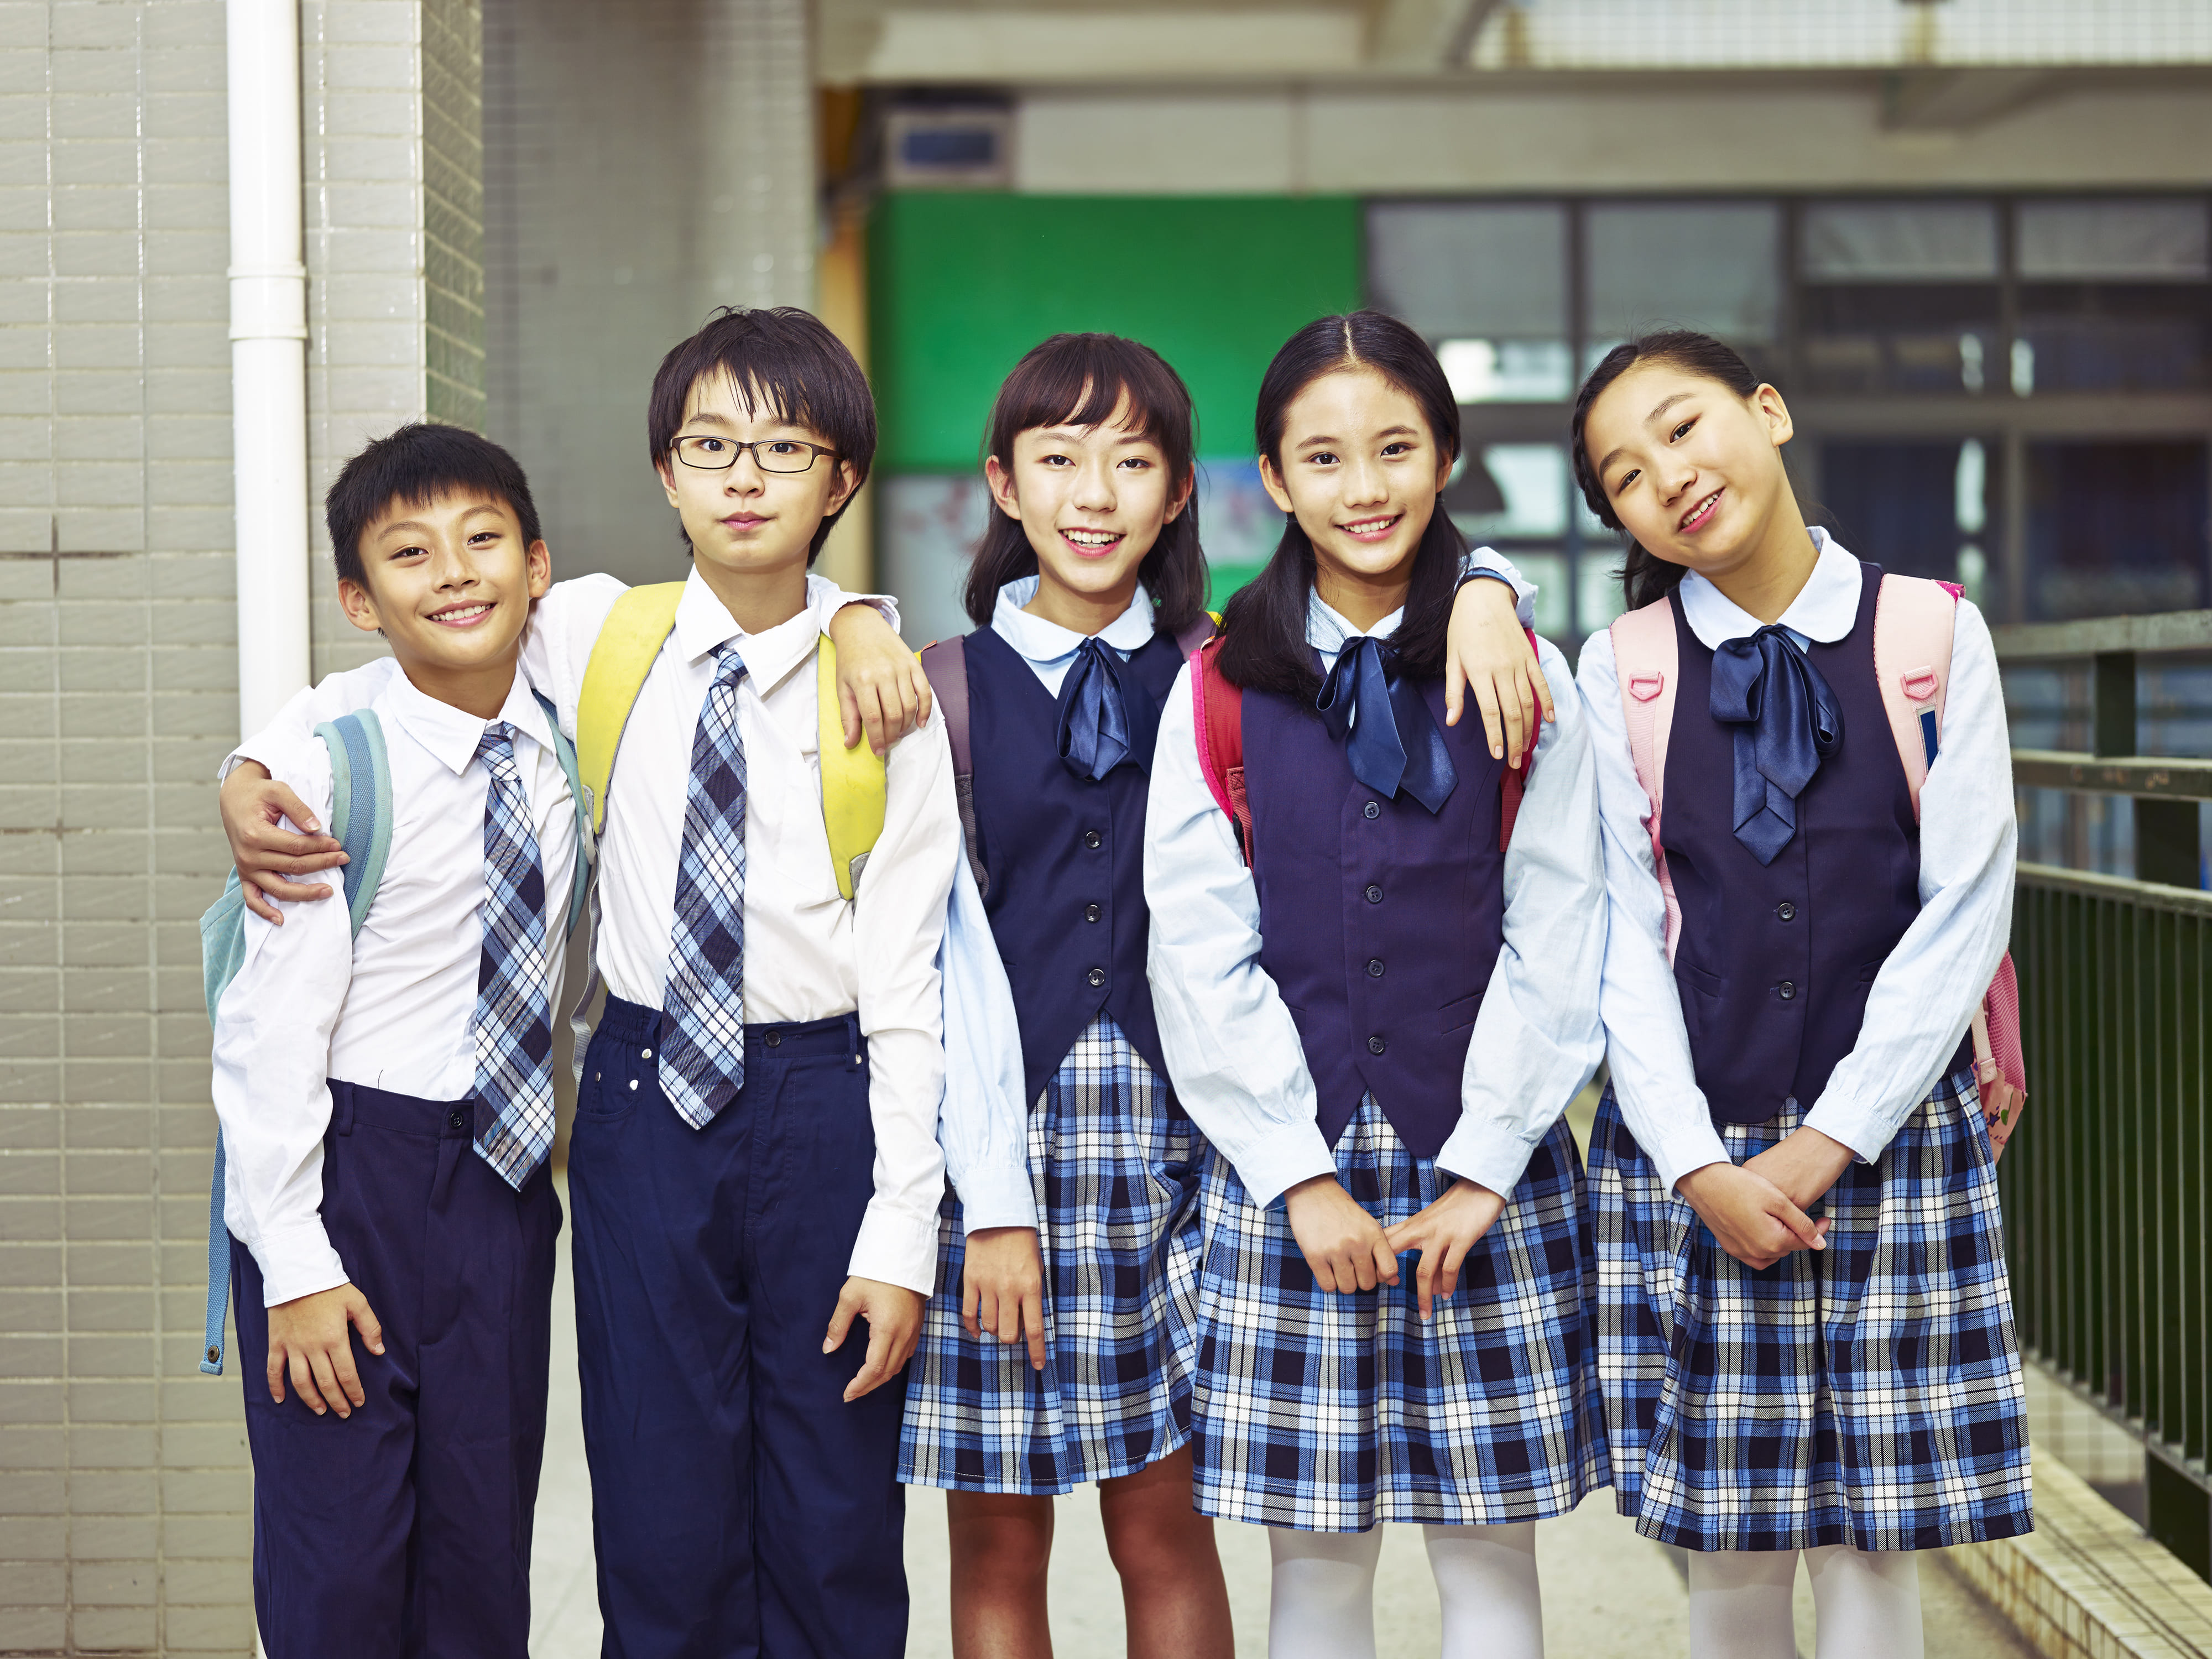 Japan teen school. Корейская школа. Форма средней школы в Японии. Ученики в Корее. Школьная форма в Японии средняя школа.